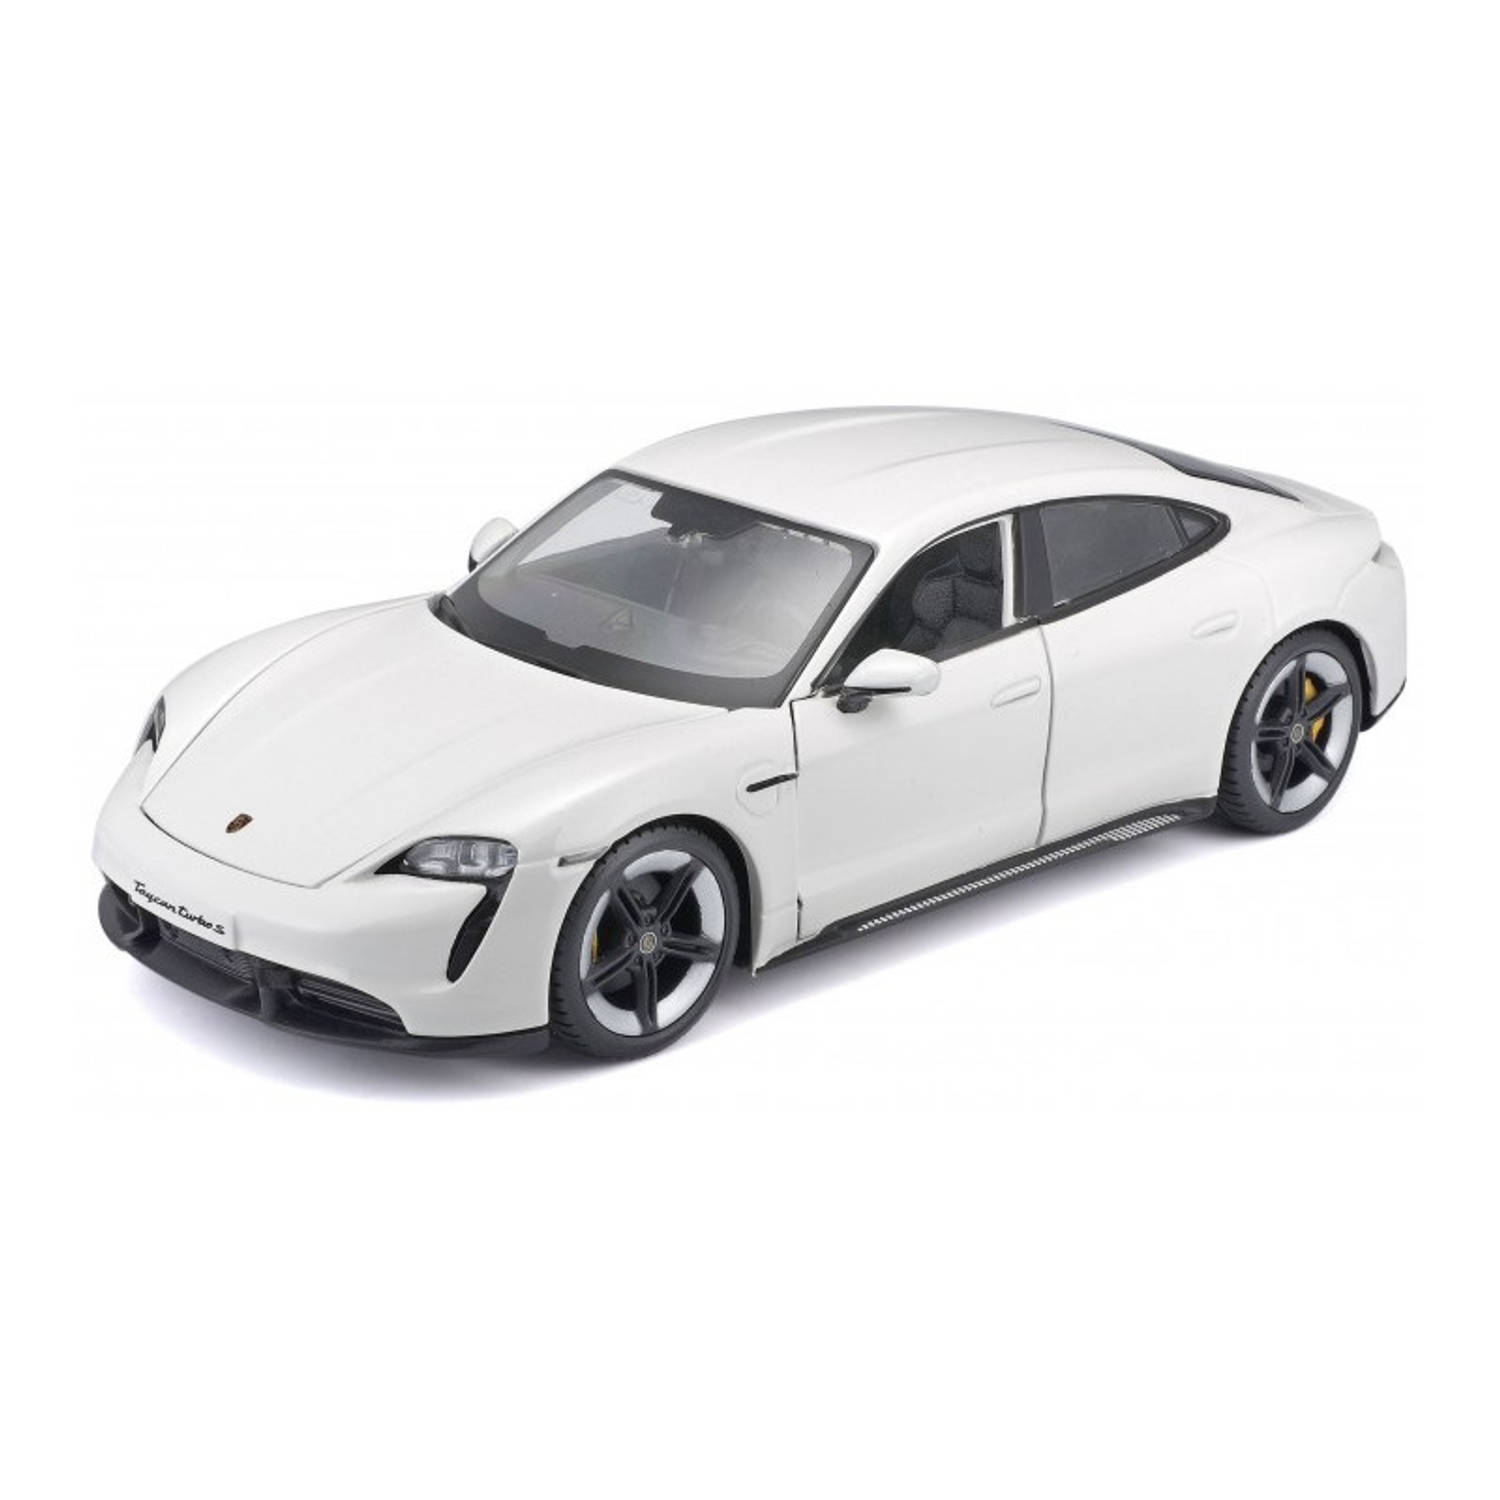 provincie zich zorgen maken omverwerping Modelauto Porsche Taycan wit schaal 1:24/20 x 8 x 6 cm - Speelgoed auto's |  Blokker